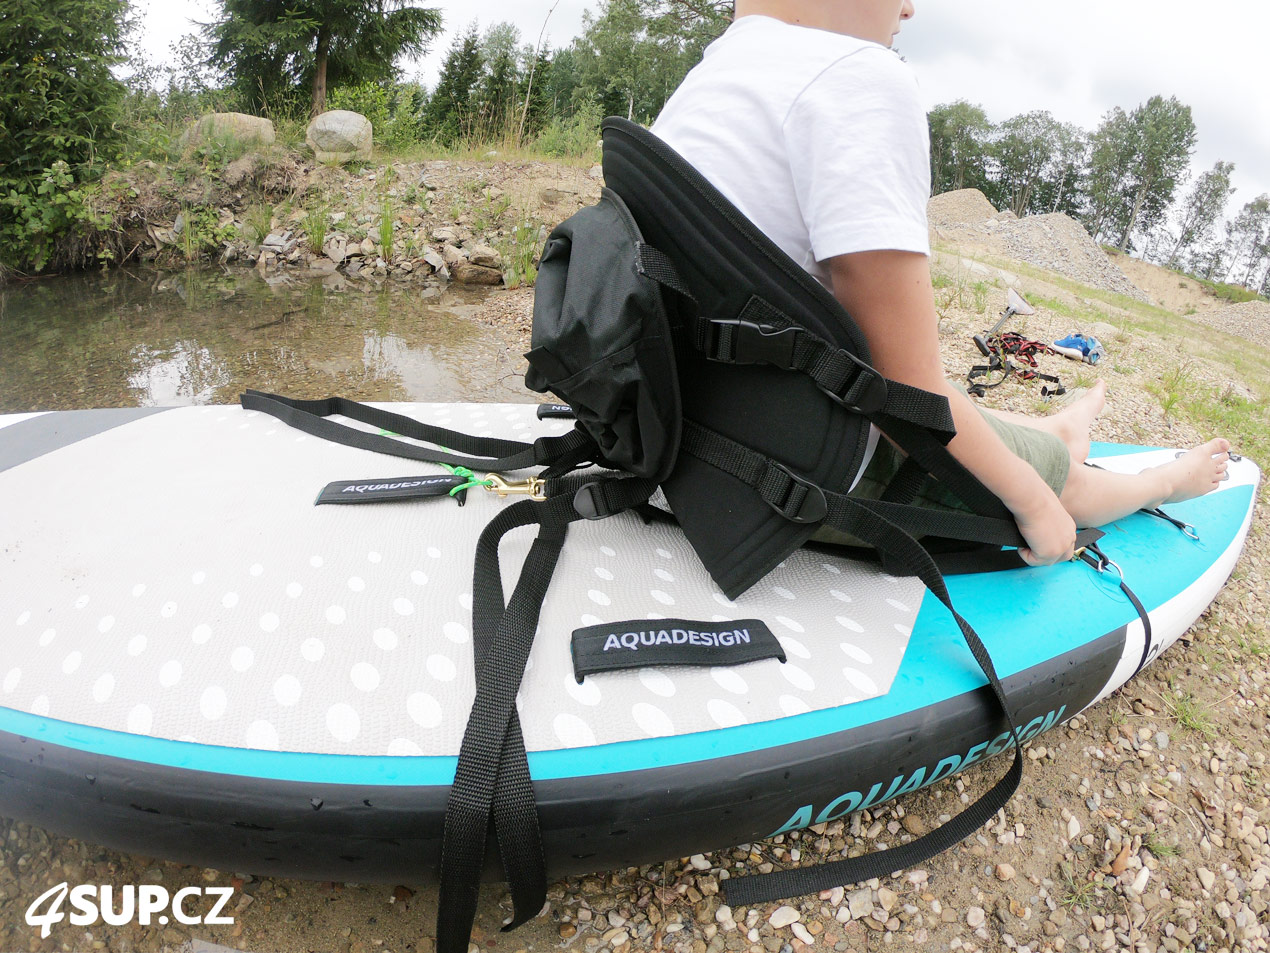 Nestandardní připojení kajakové sedačky k paddleboardu pro děti